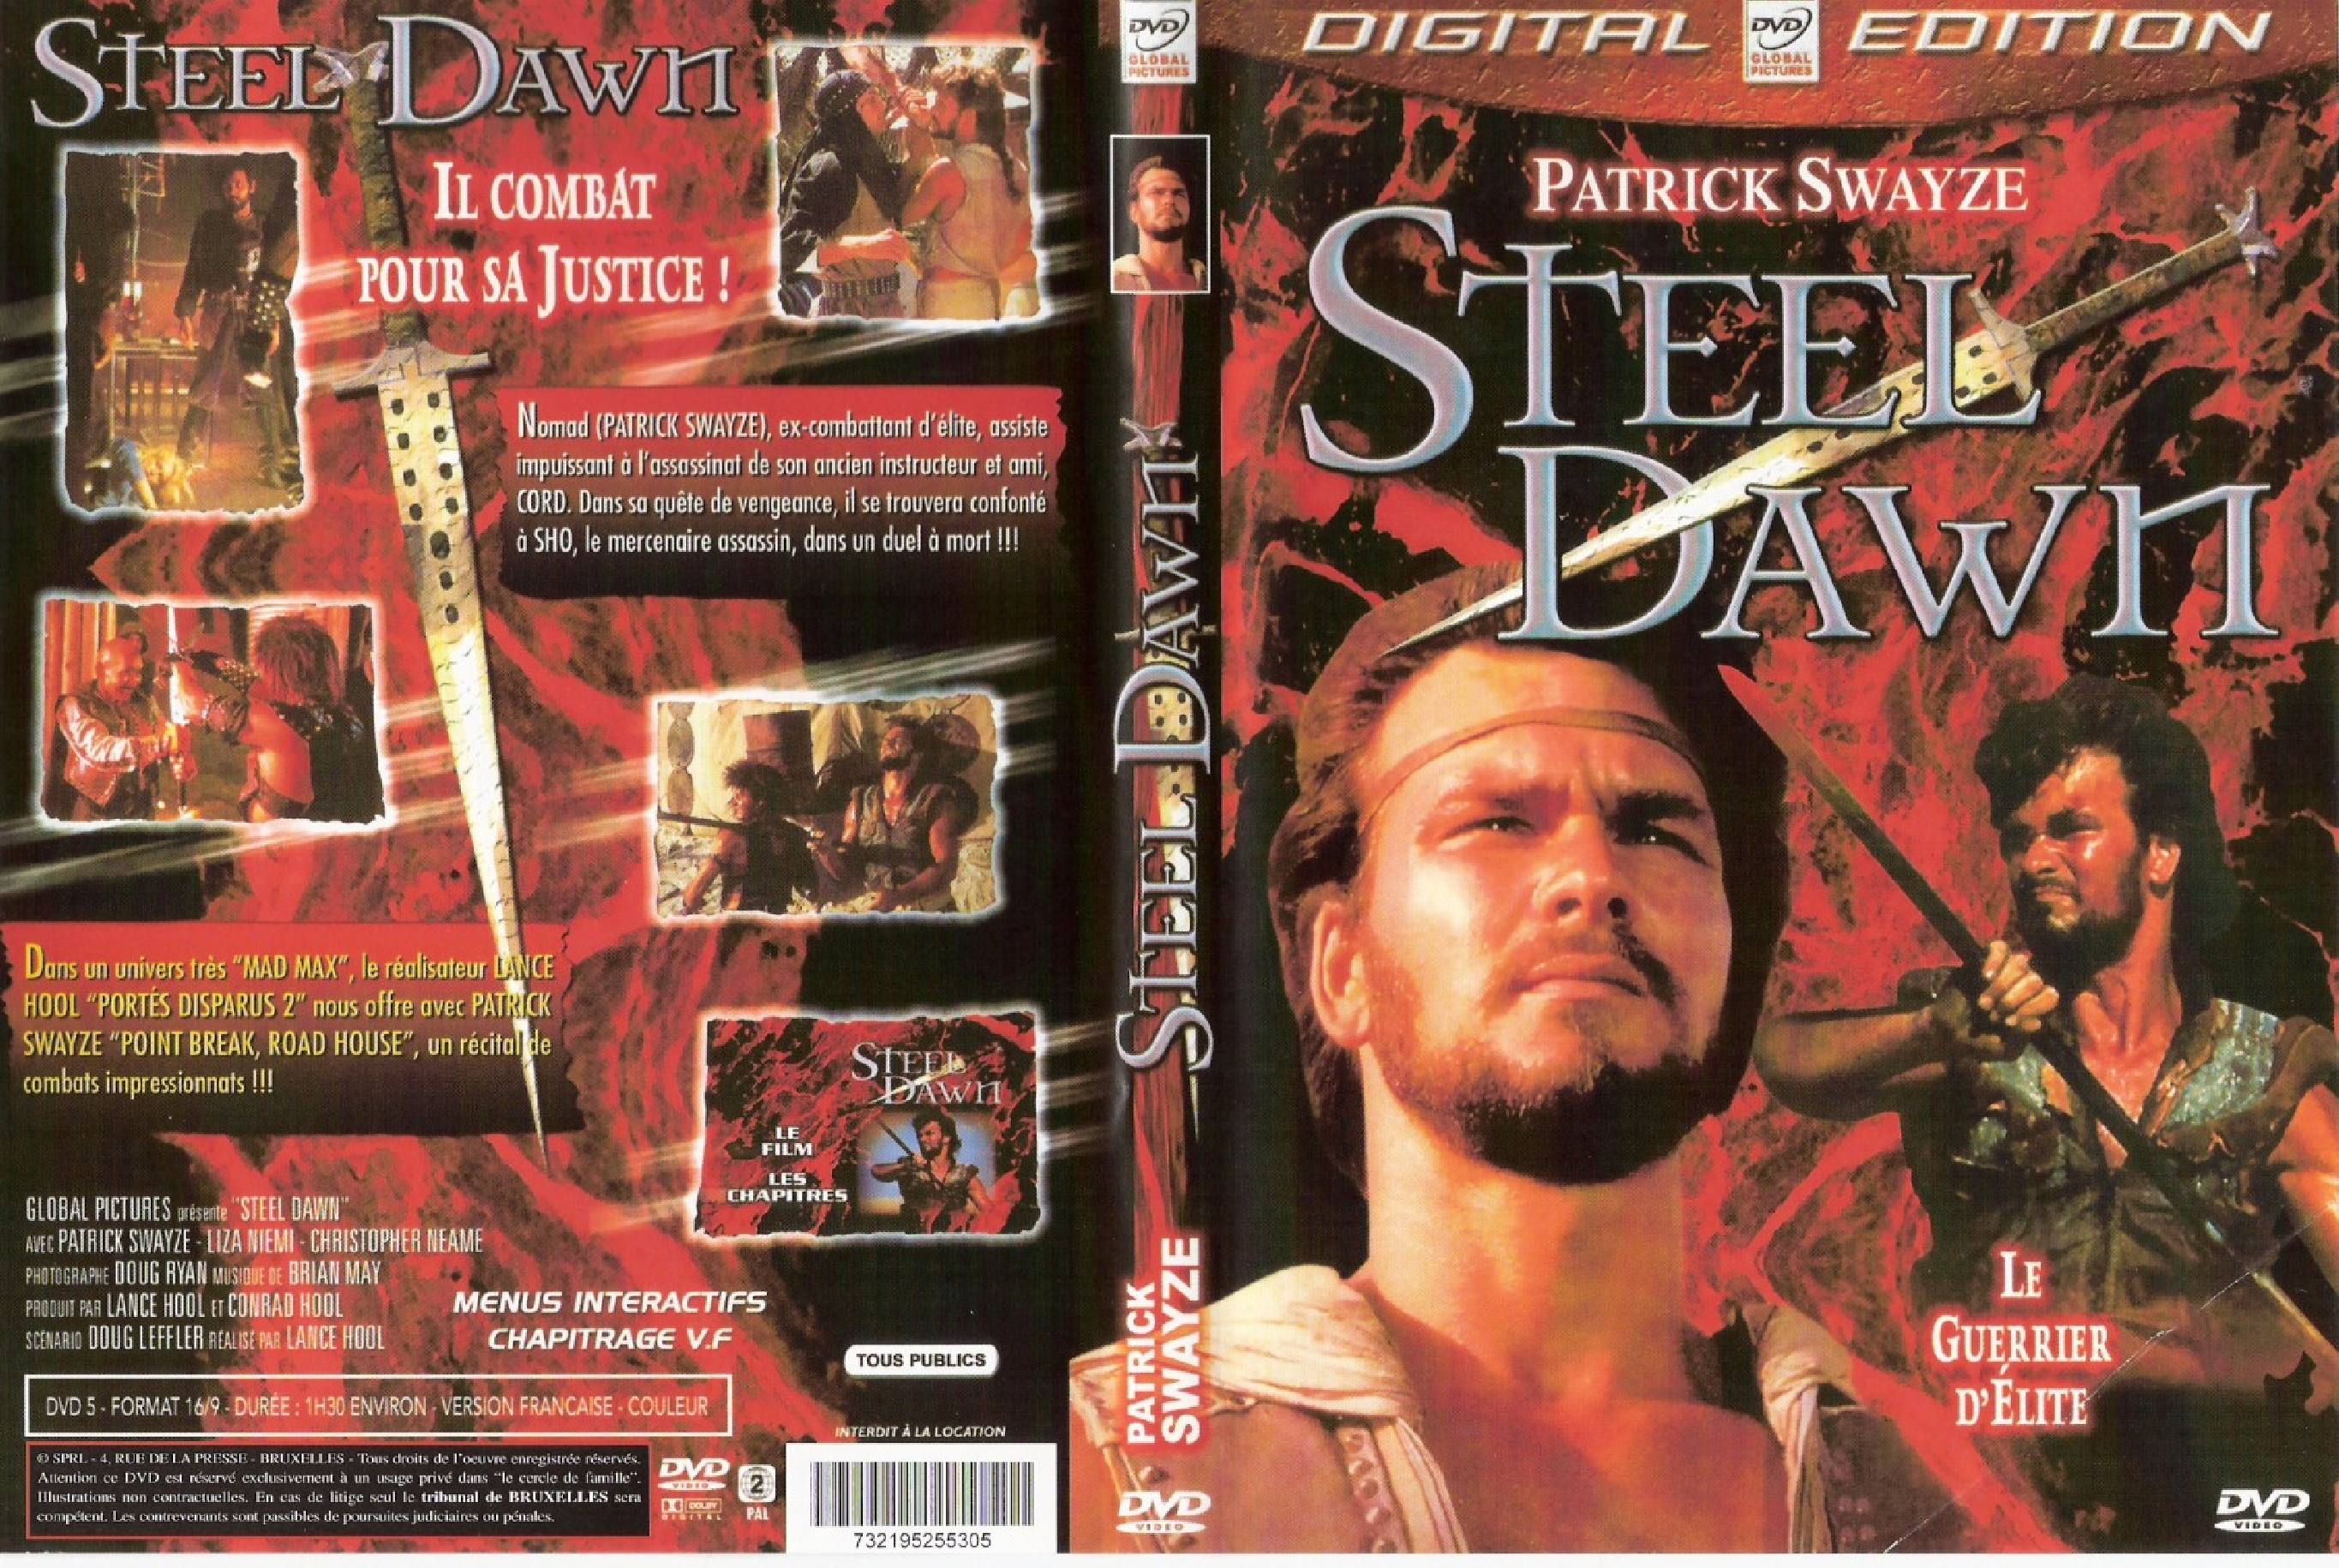 Steel dawn v2